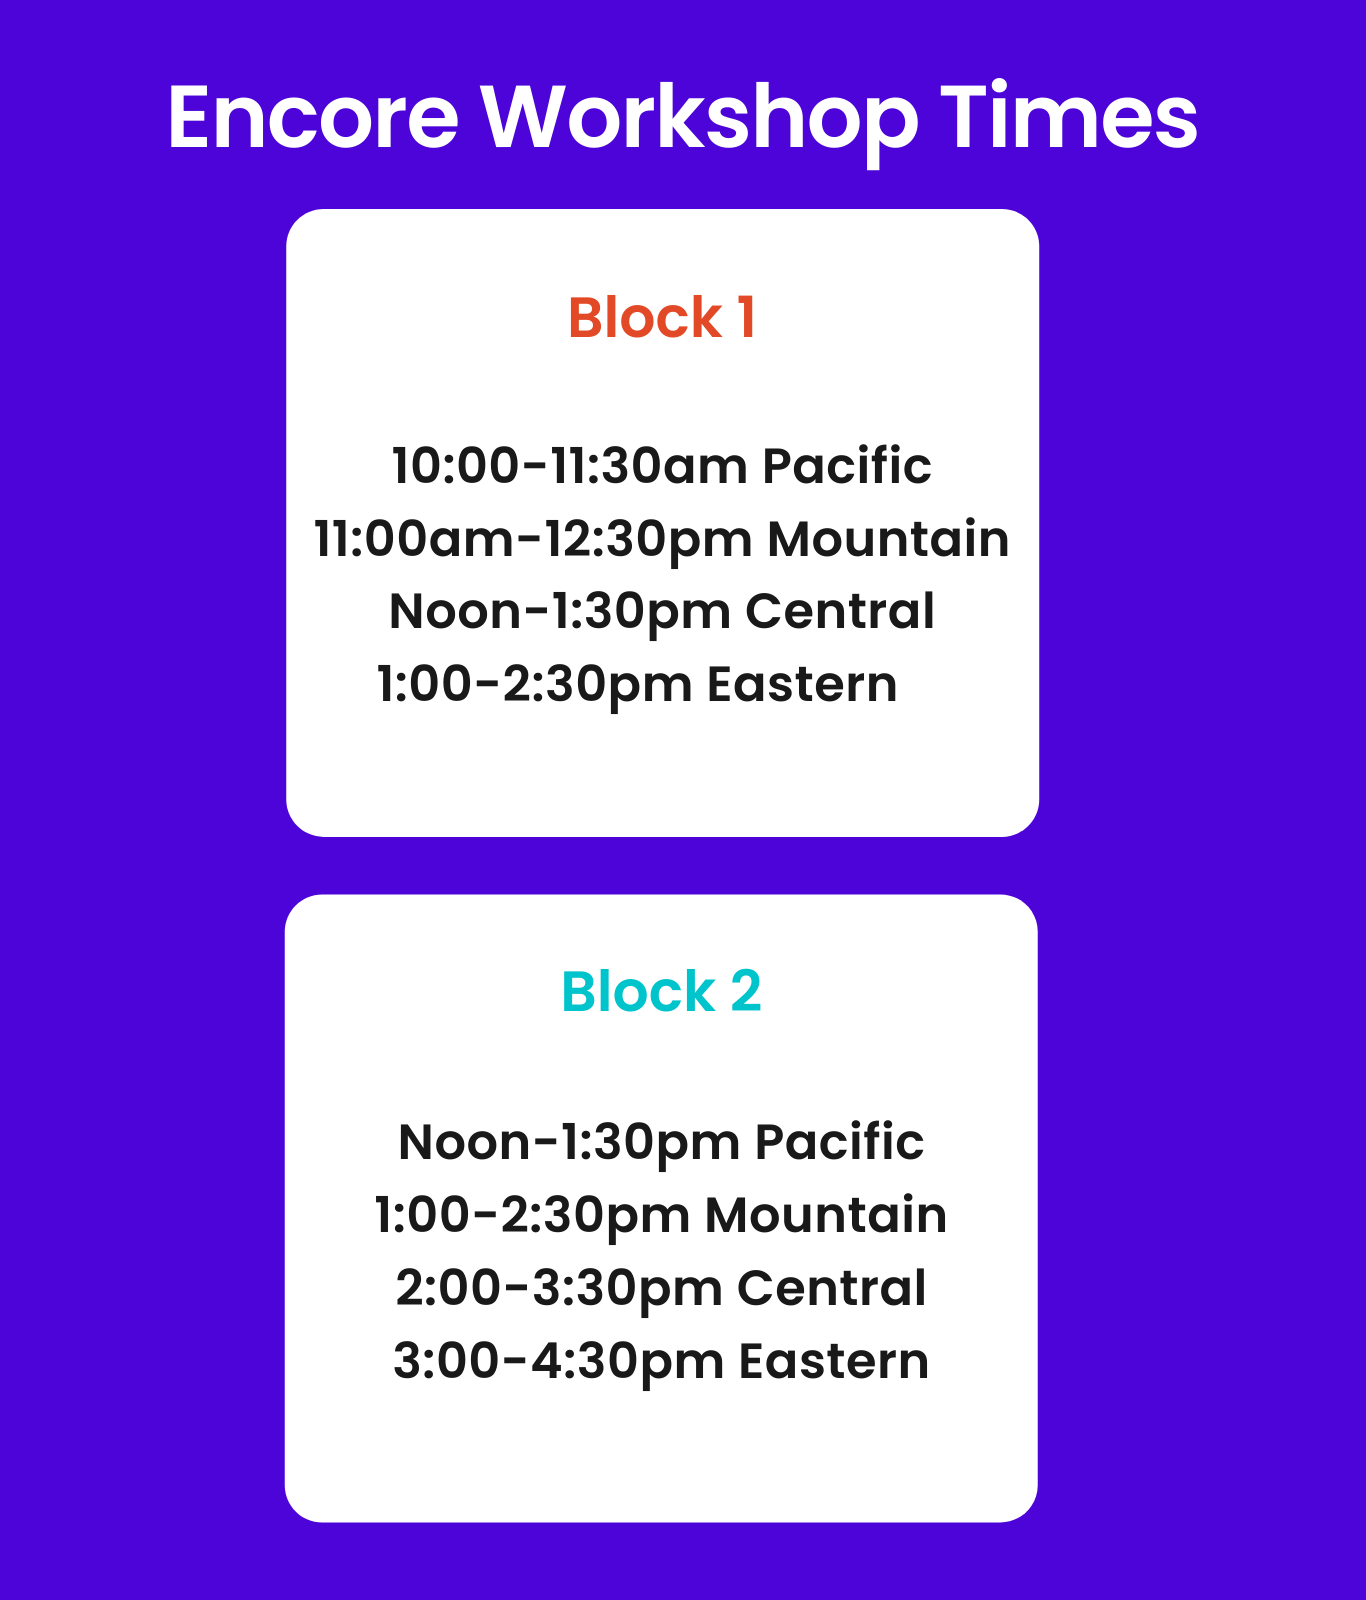 Time slots for encore workshops